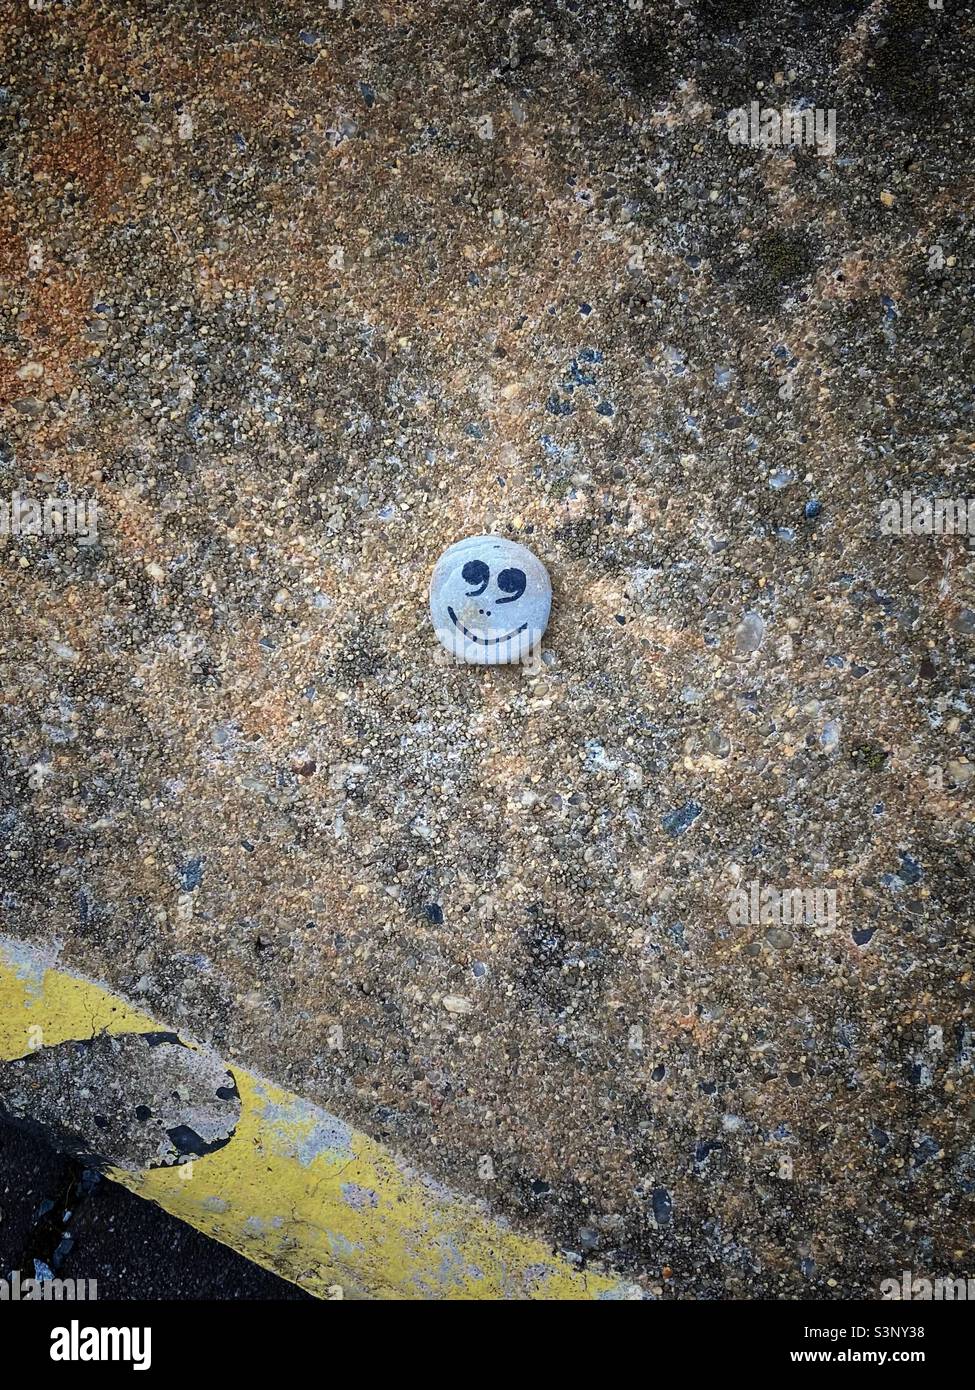 Ein fröhlich lächelnder Emoji auf einem Asphalt-Boden, der auf einem kleinen Stein gemalt ist Stockfoto